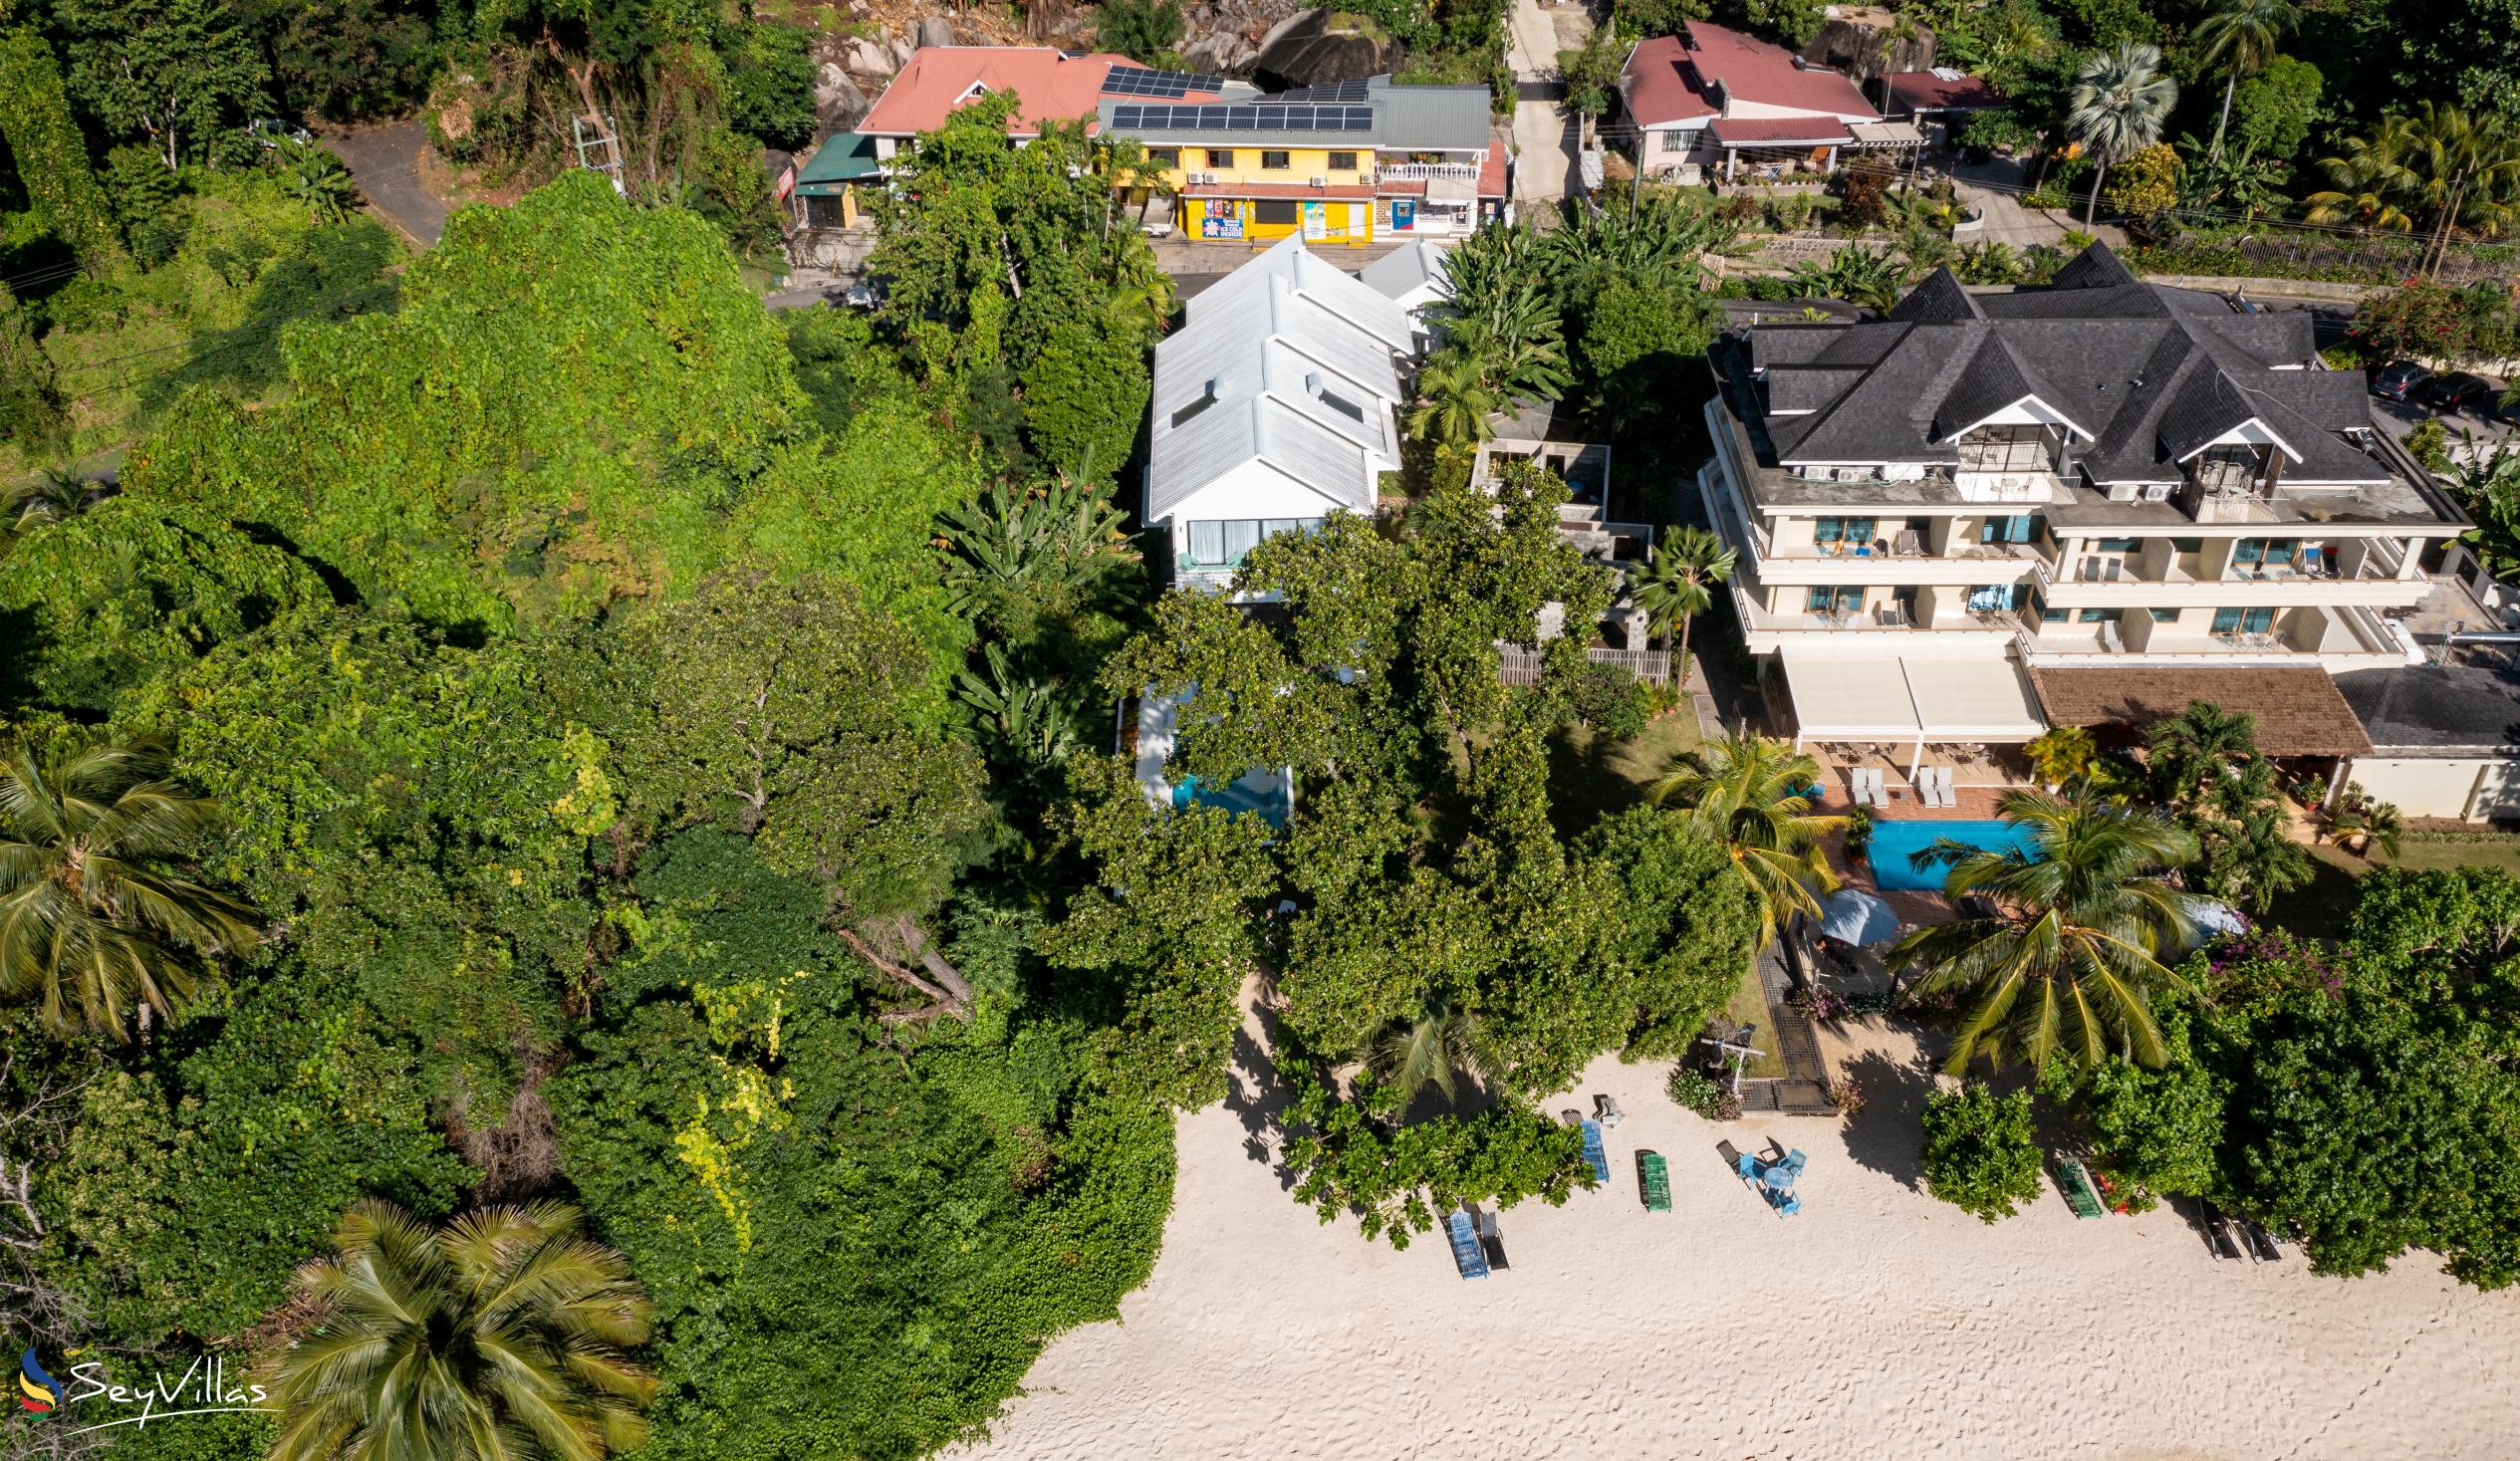 Foto 26: Lyla Beach Villa - Aussenbereich - Mahé (Seychellen)